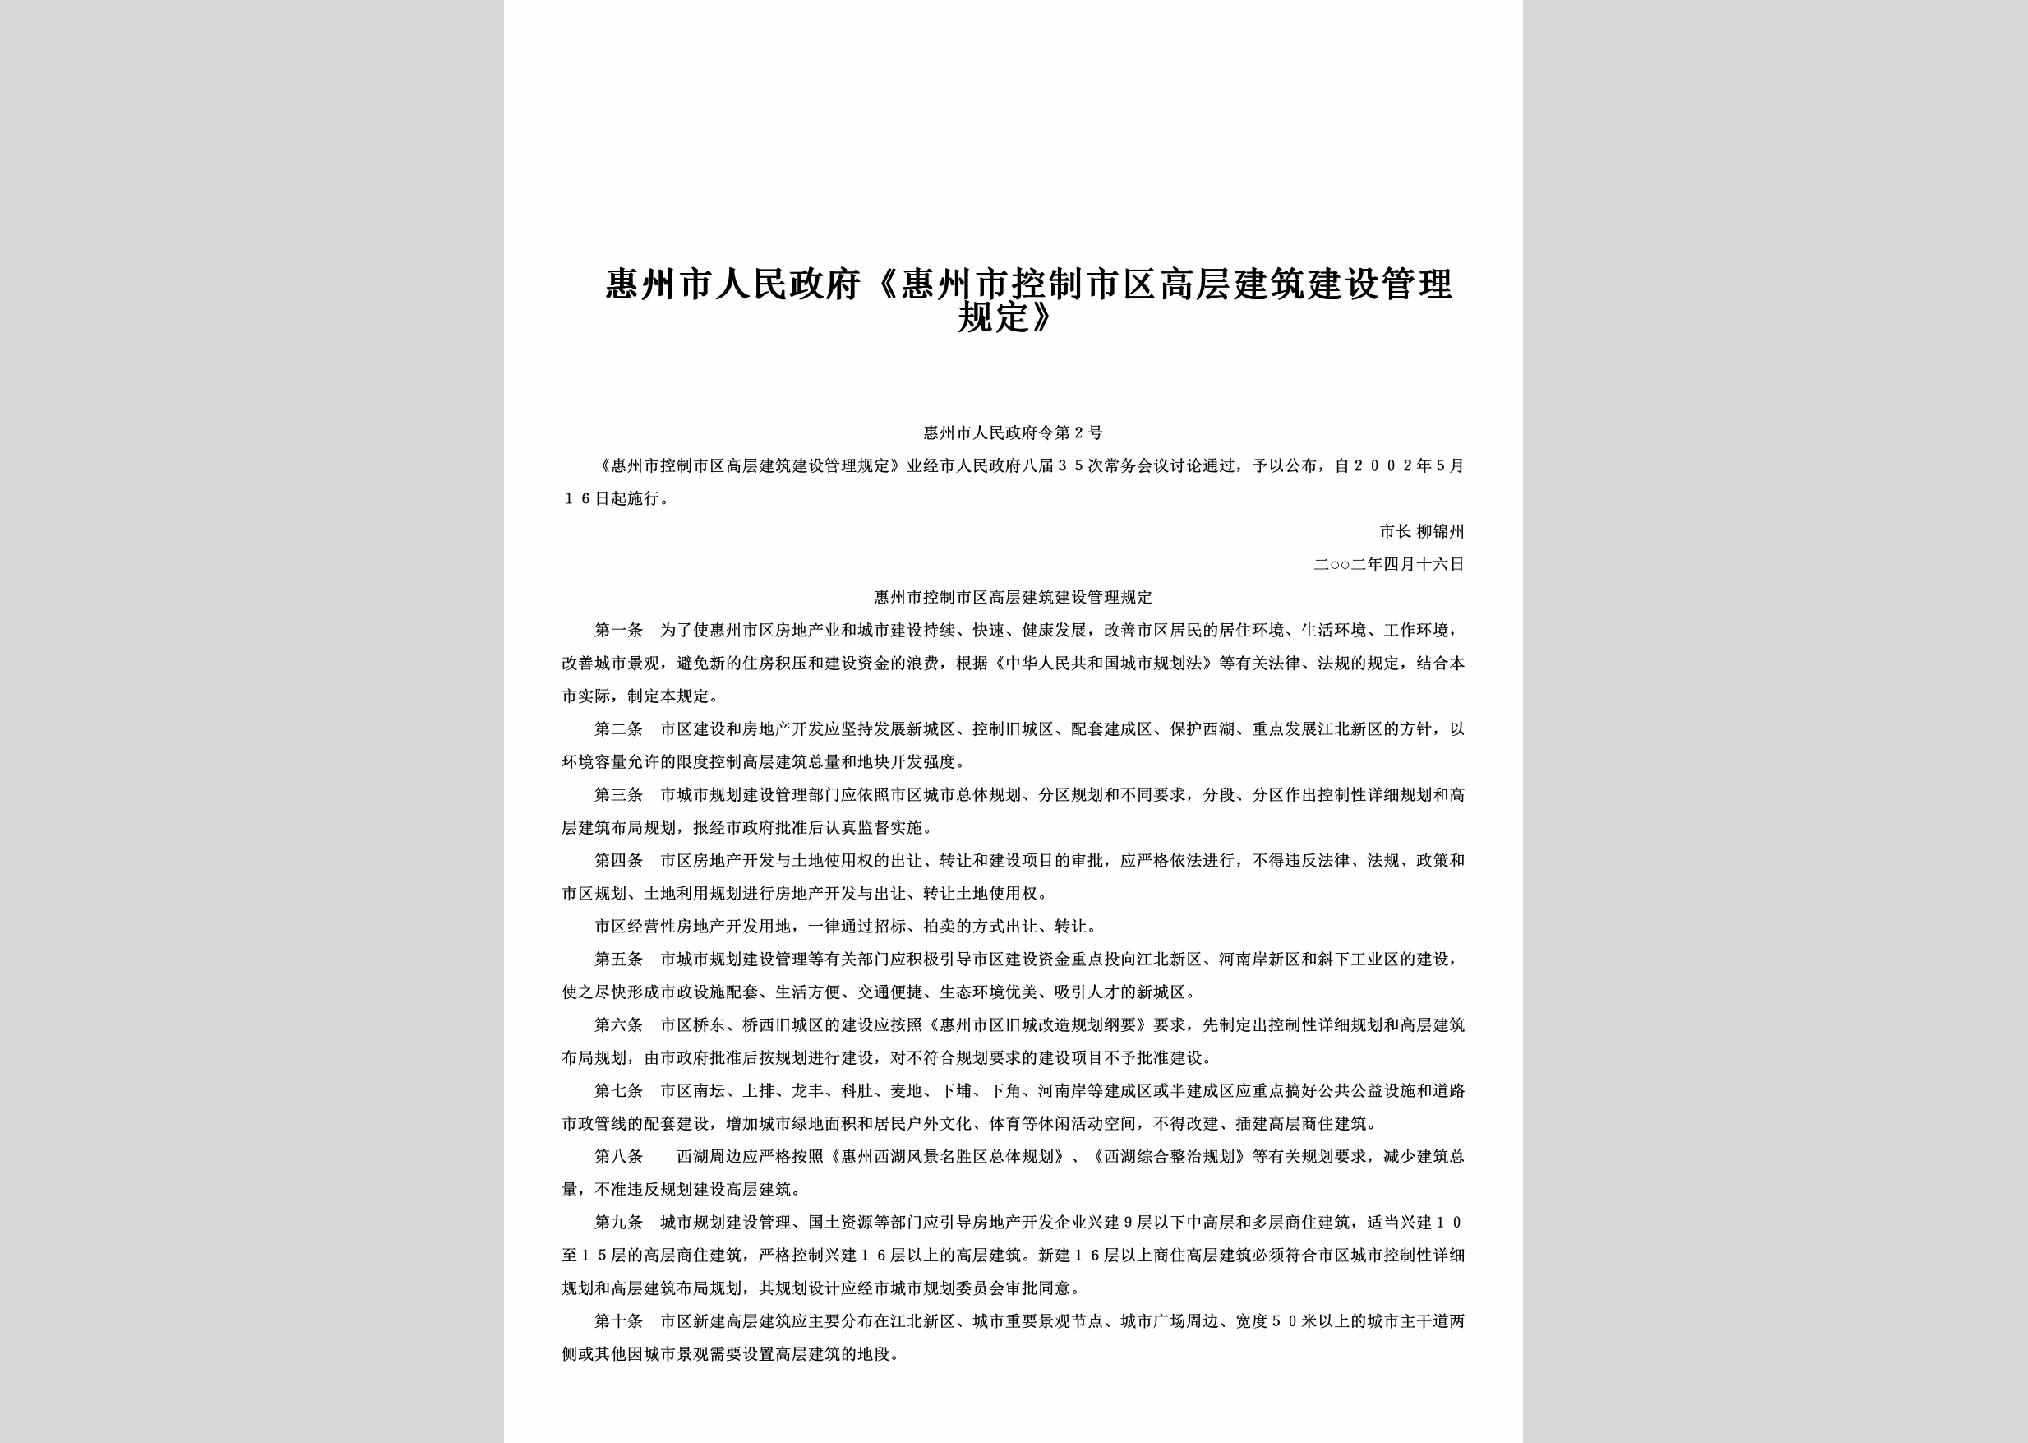 惠州市人民政府令第2号：《惠州市控制市区高层建筑建设管理规定》